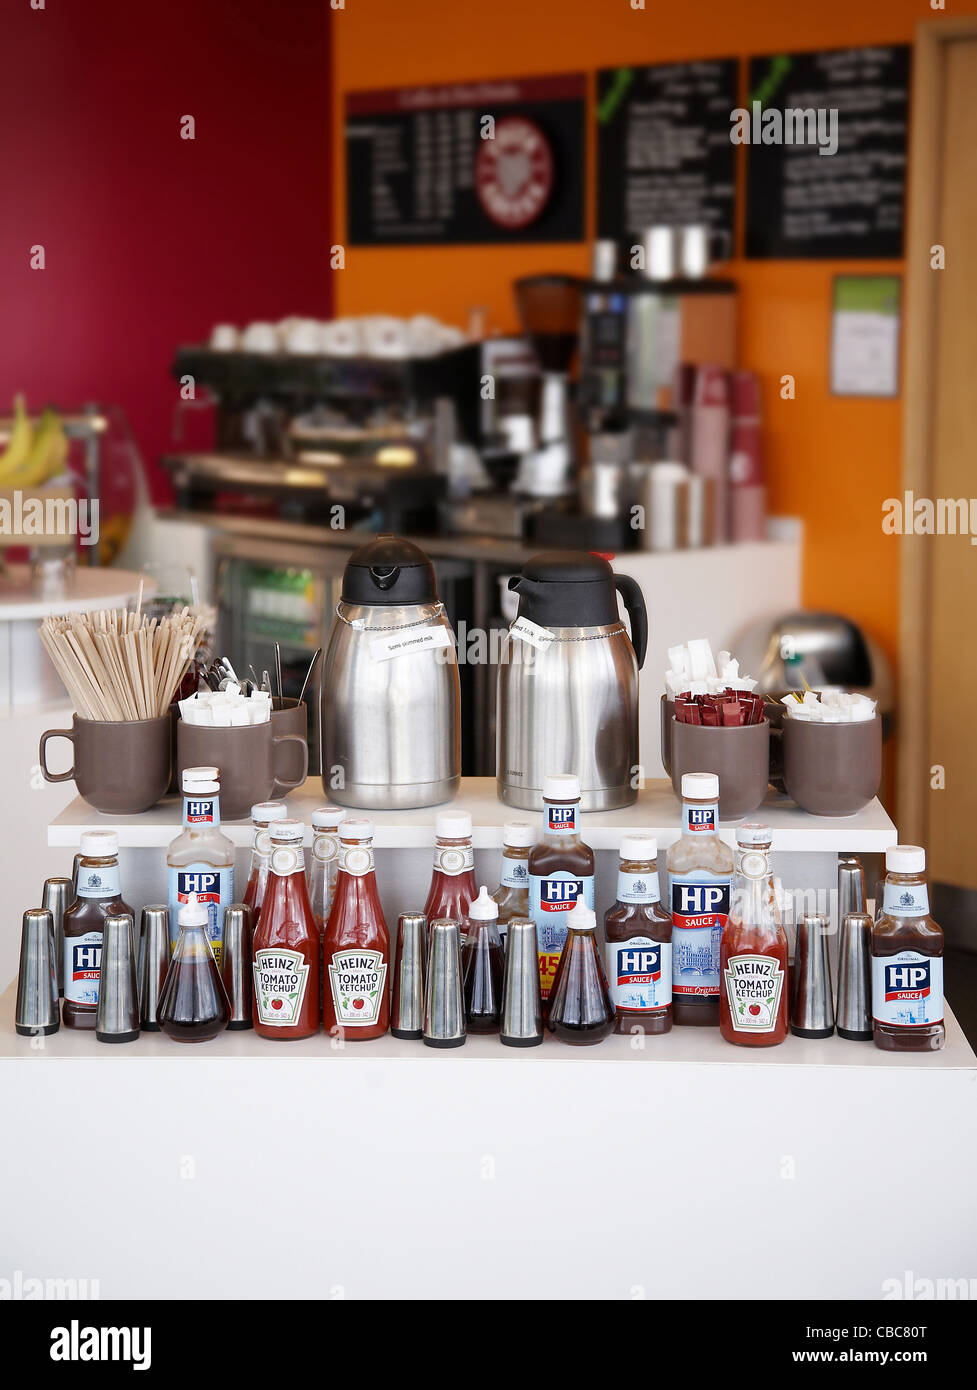 Anzeige von verschiedenen Gewürzen in einem Café in England, Uk. Stockfoto